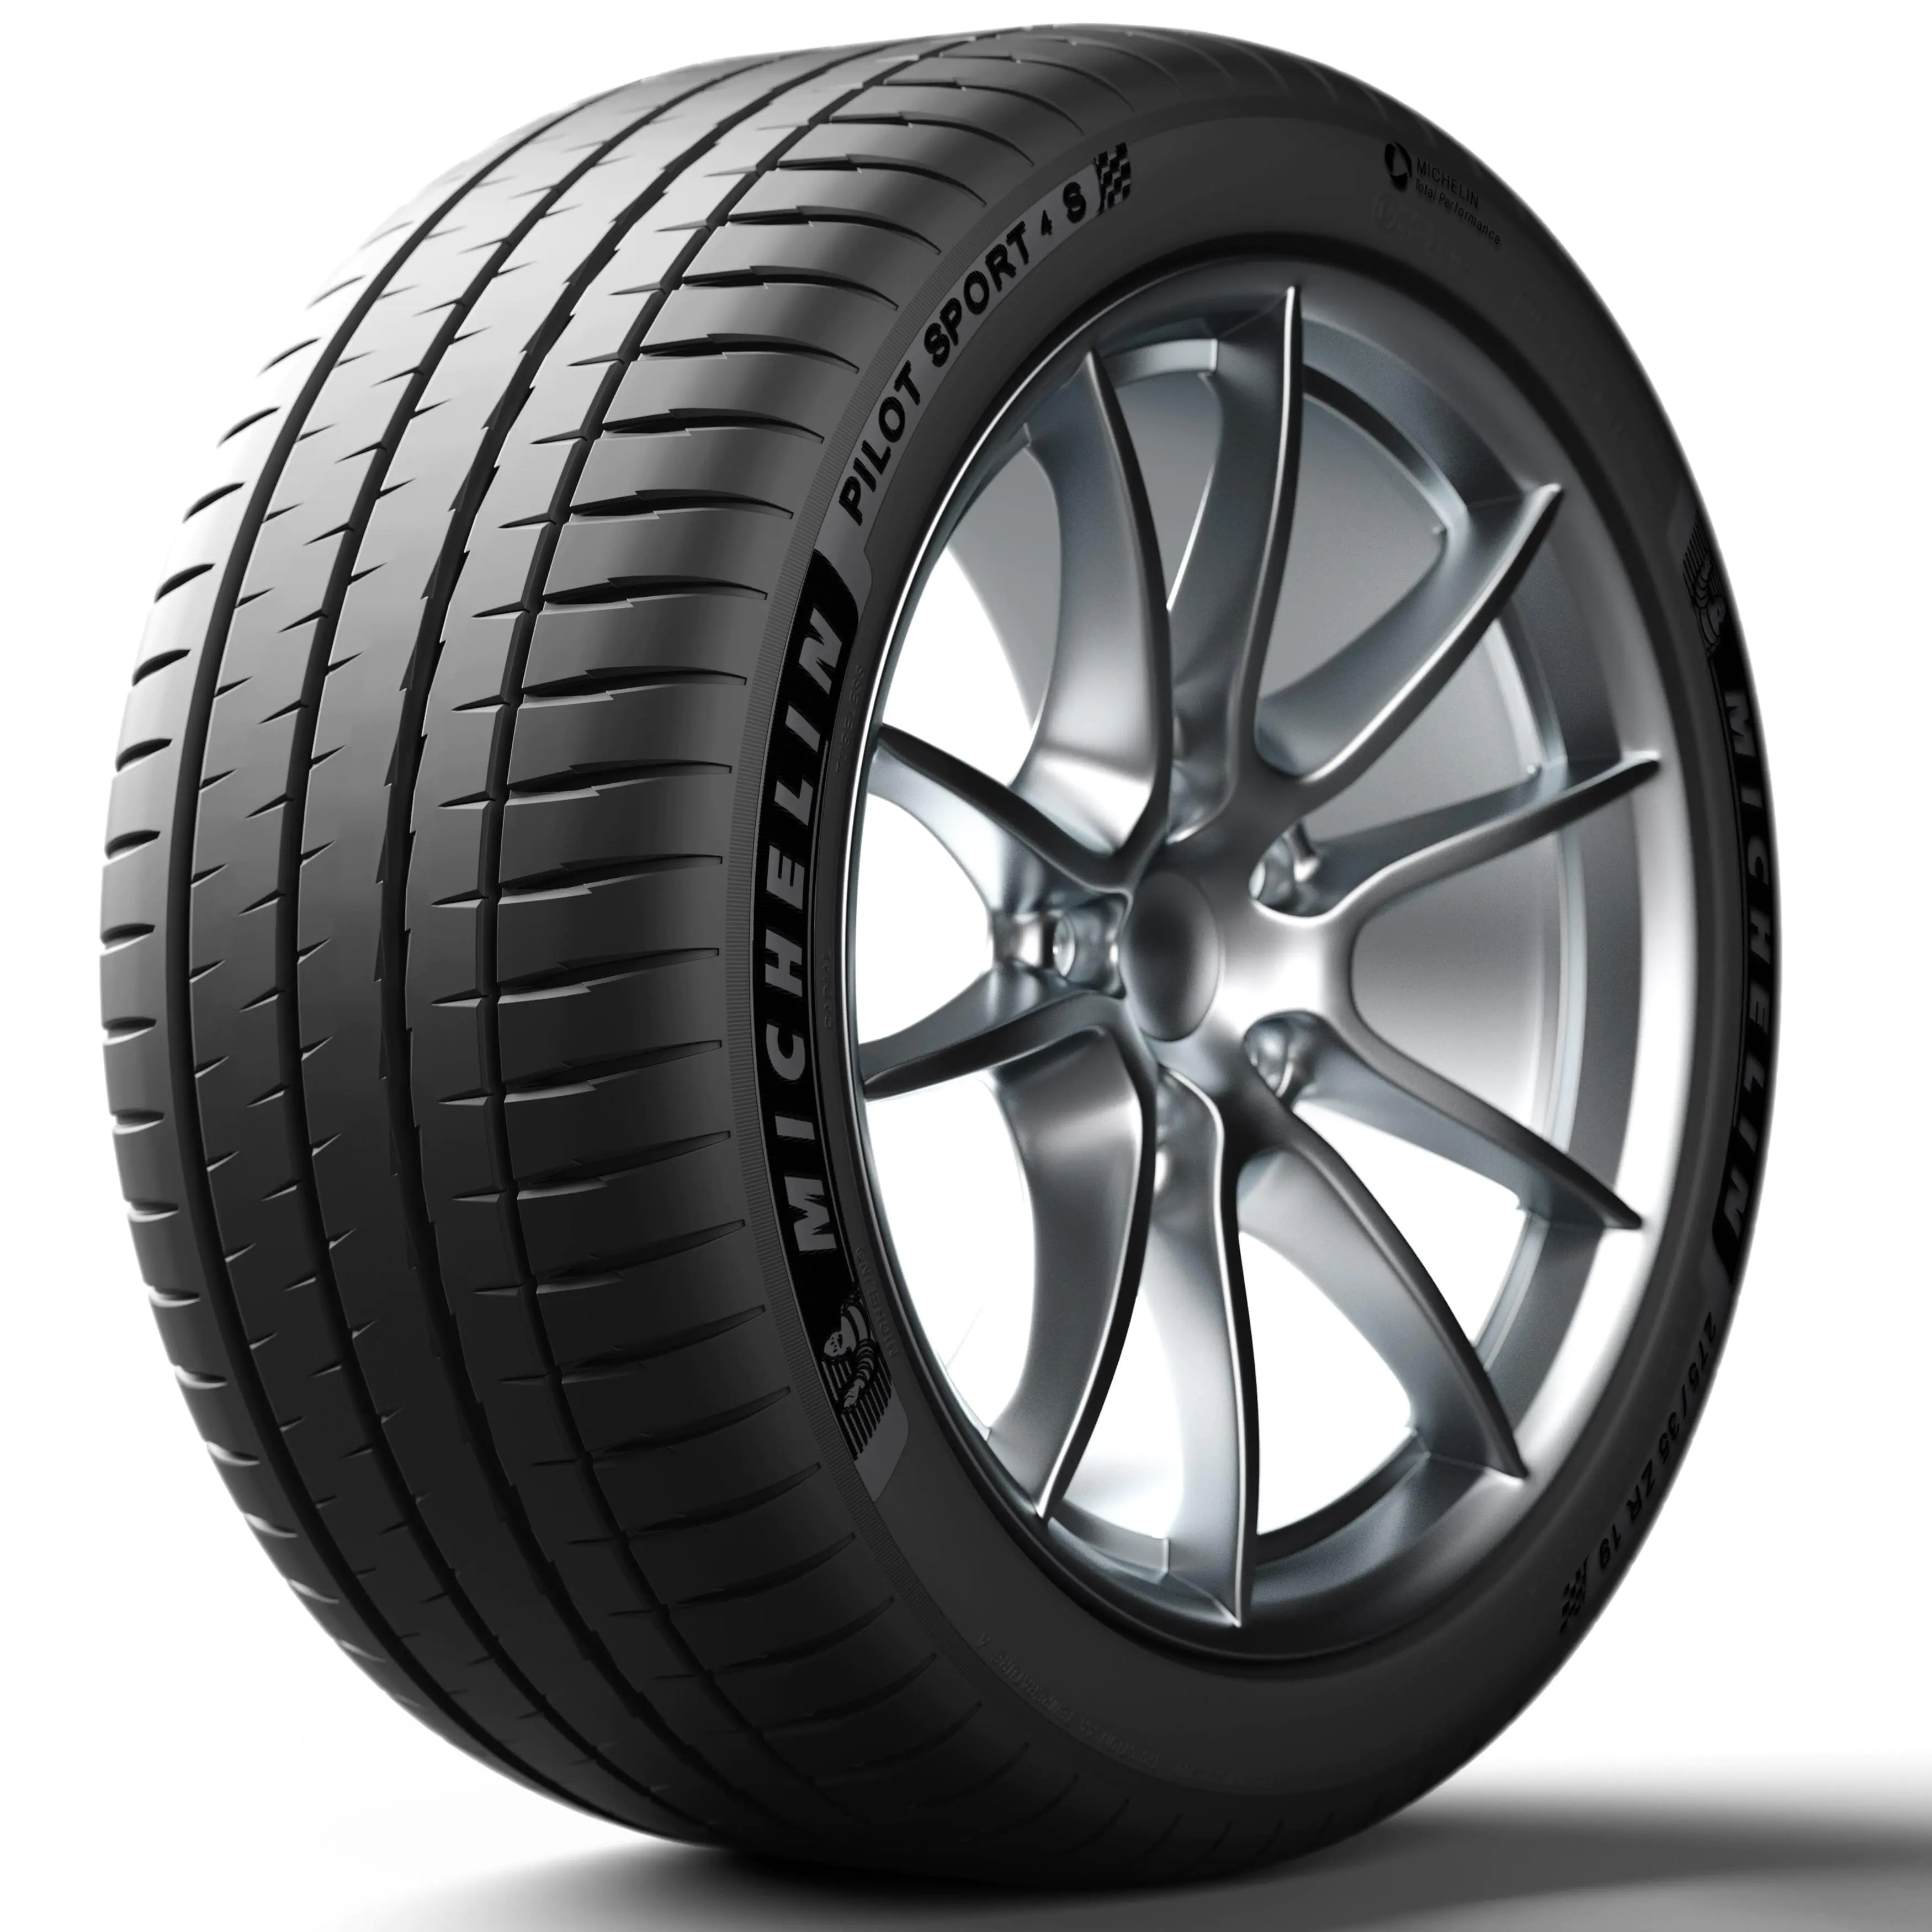 Michelin Michelin 315/30 R19 104Y PILOT SPORT 4 S pneumatici nuovi Estivo 